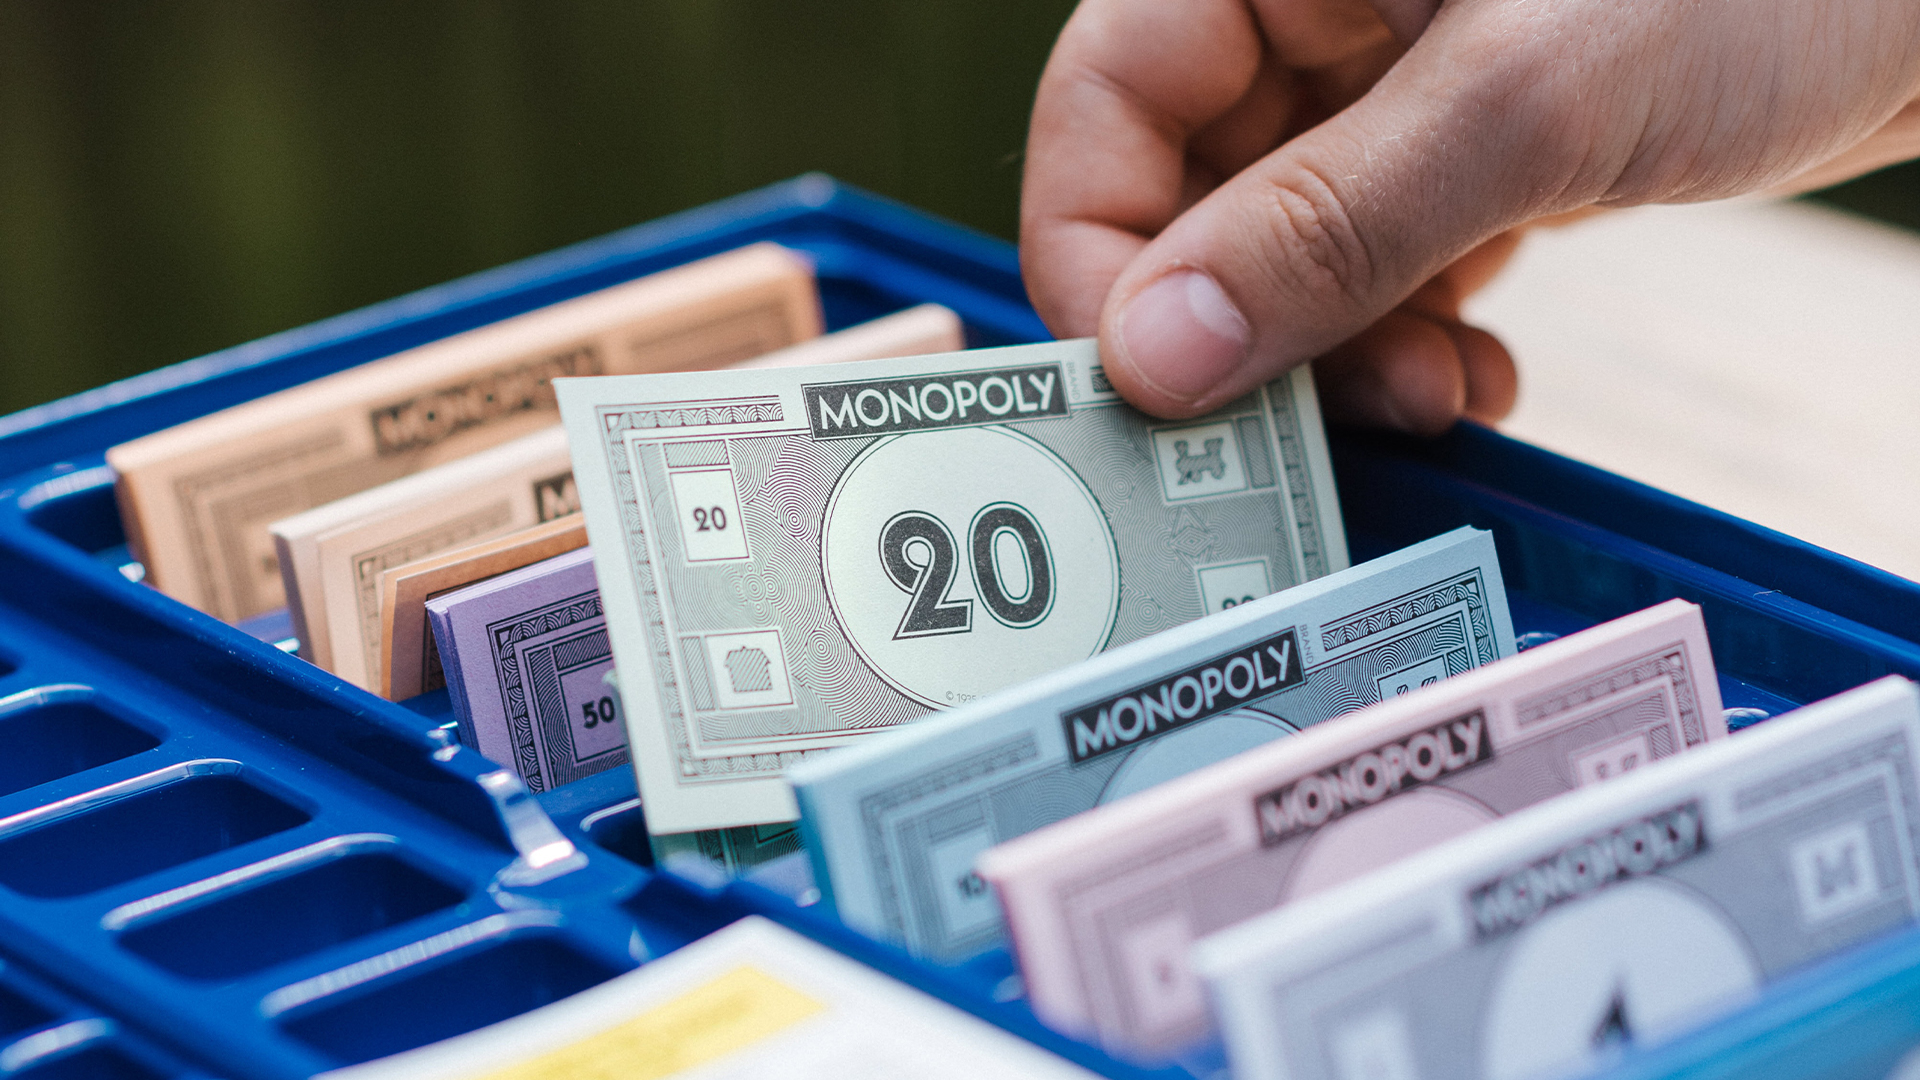 dinero monopoly